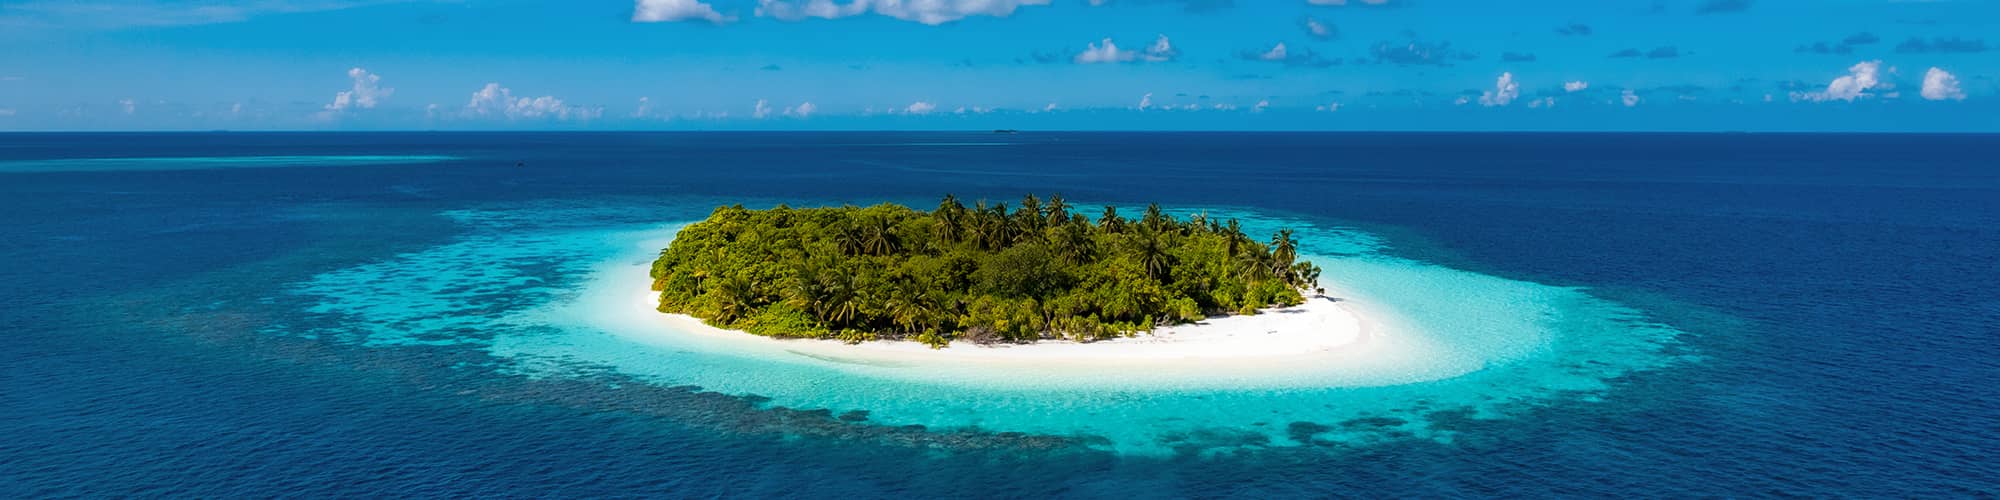 Trek aux Maldives : snorkeling, randonnée et voyage  © graphixel